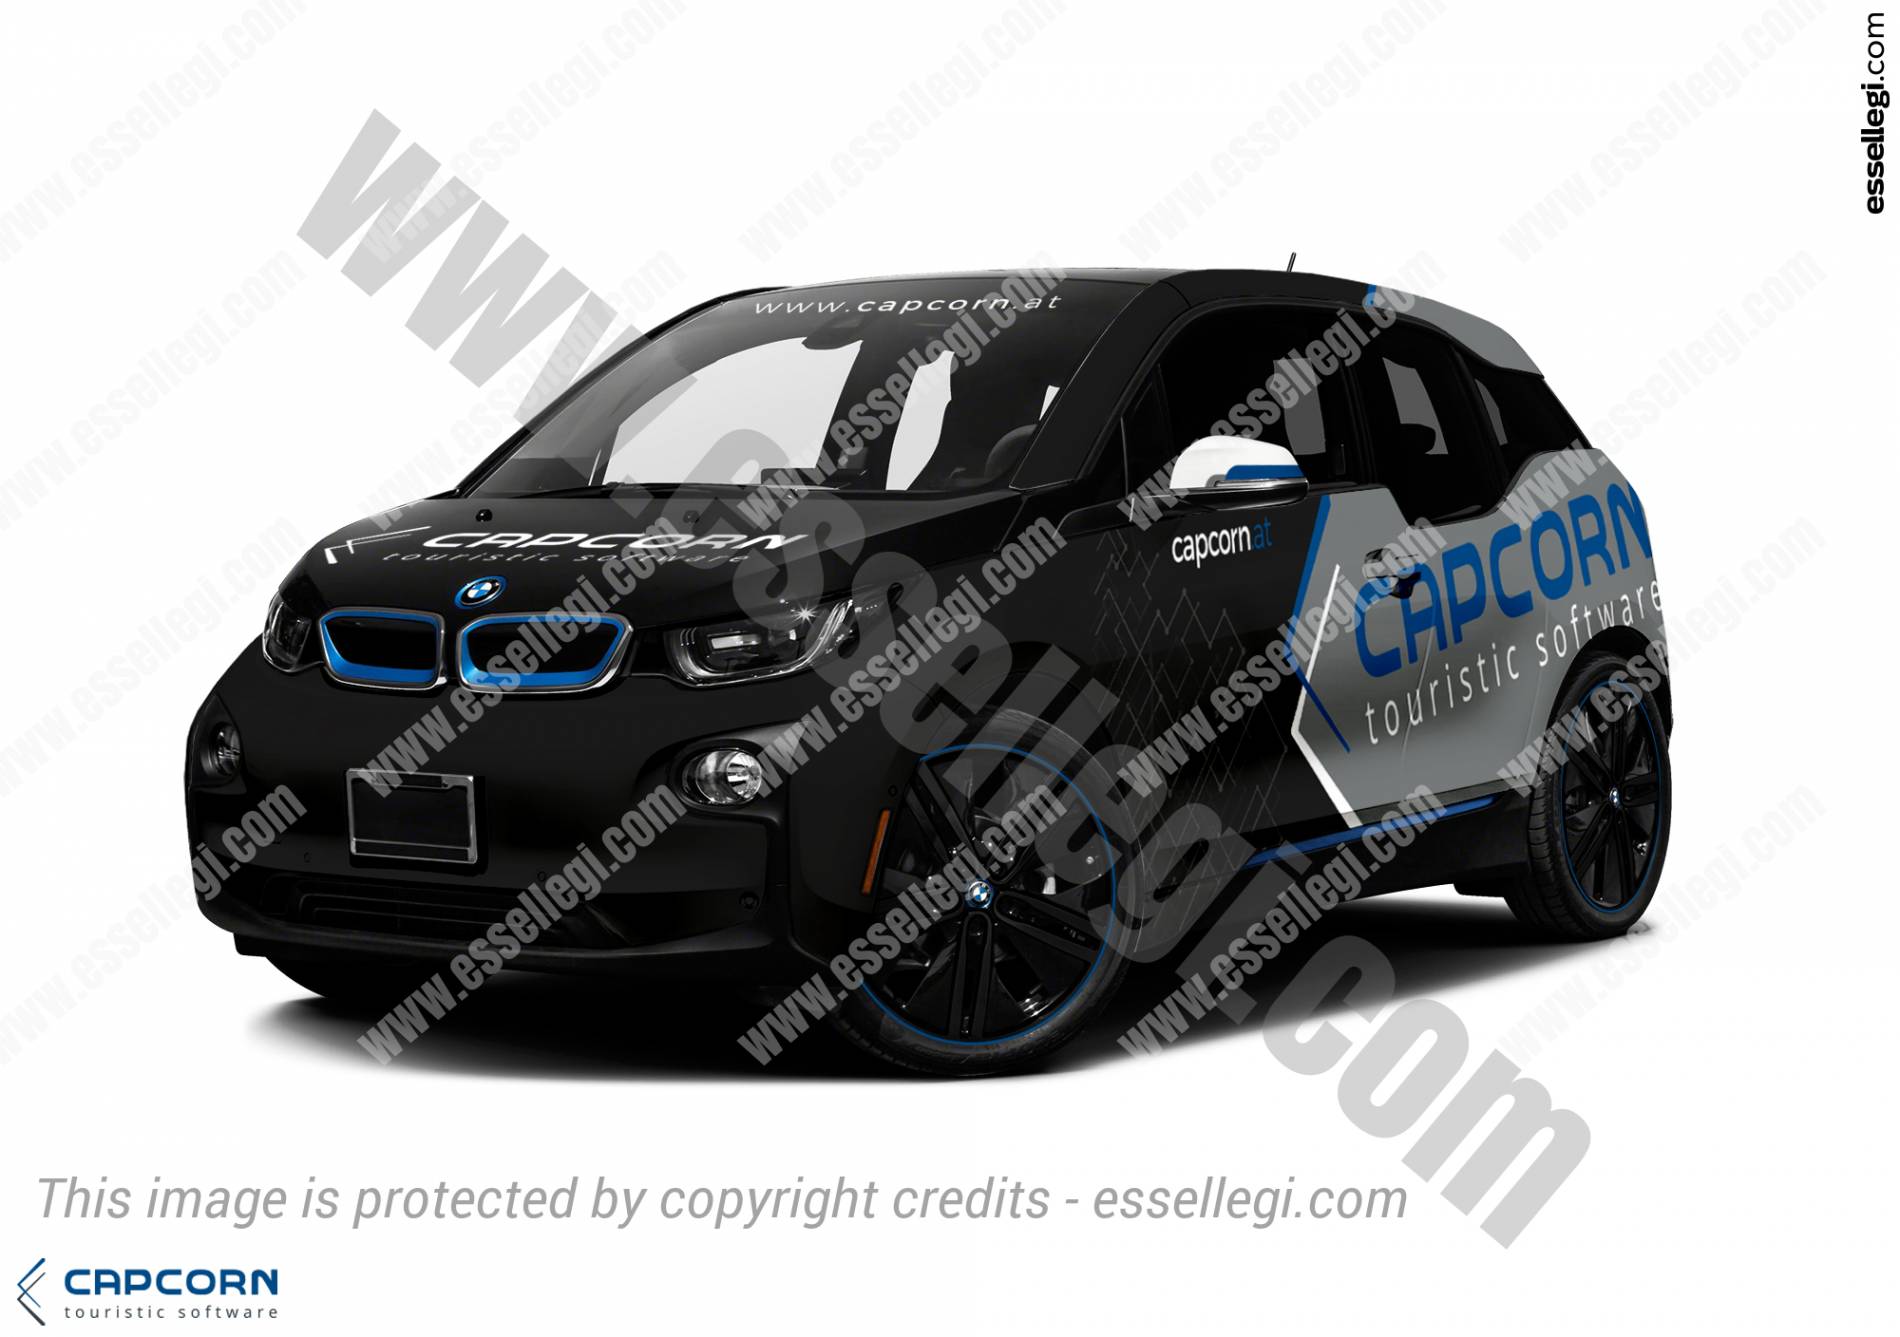 BMW i3 Wrap Design. BMW i3 | Car Wrap Design by Essellegi. Car Signs, Car Signage, Car Signwriting, Car Wrap Designer, Car Graphic, Custom Vehicle Signage, Car Wrap Design by Essellegi.